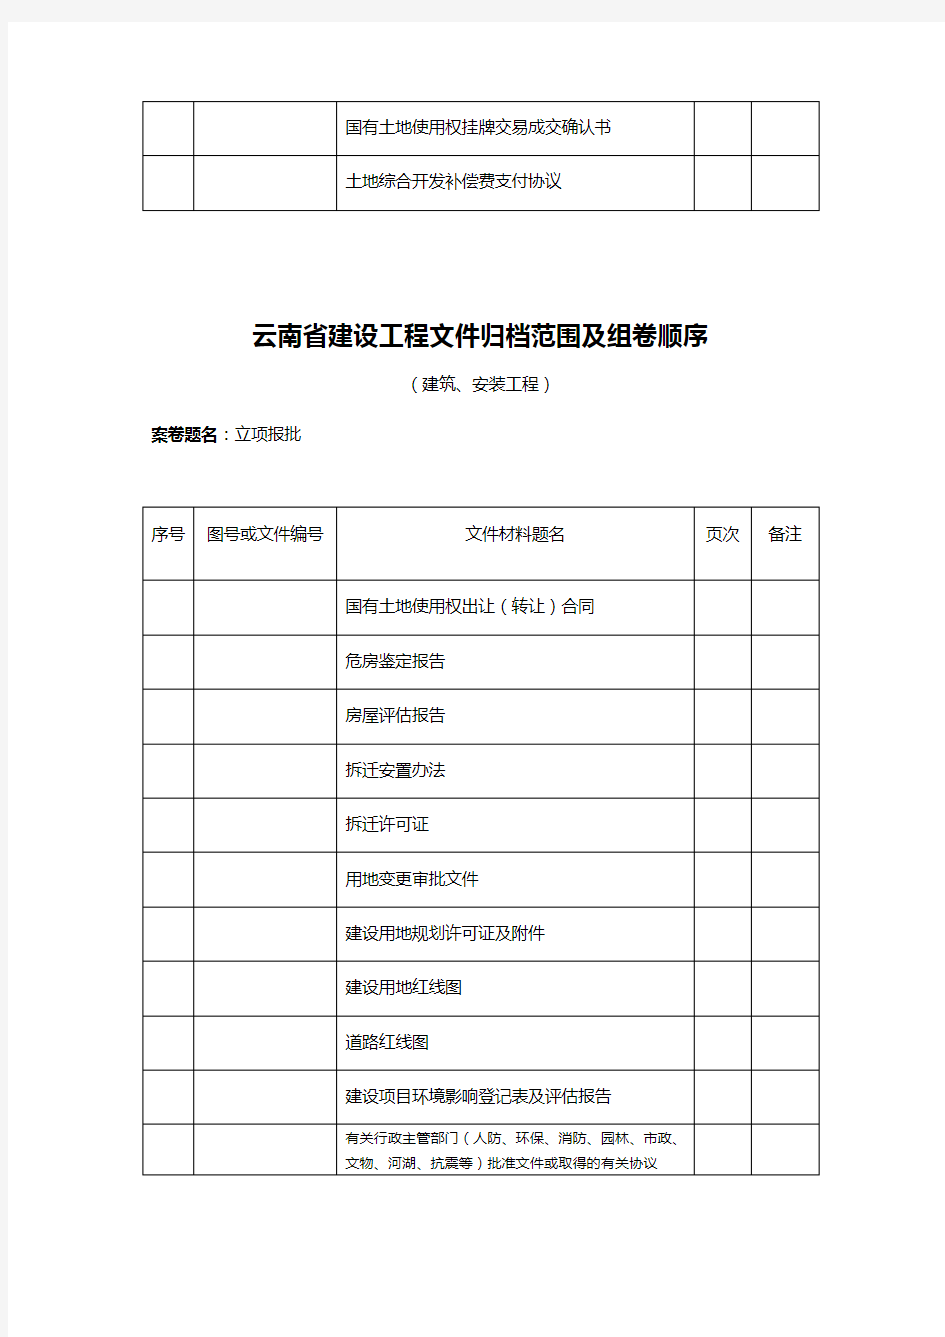 【建筑工程管理】云南省建设工程文件归档范围及组卷顺序